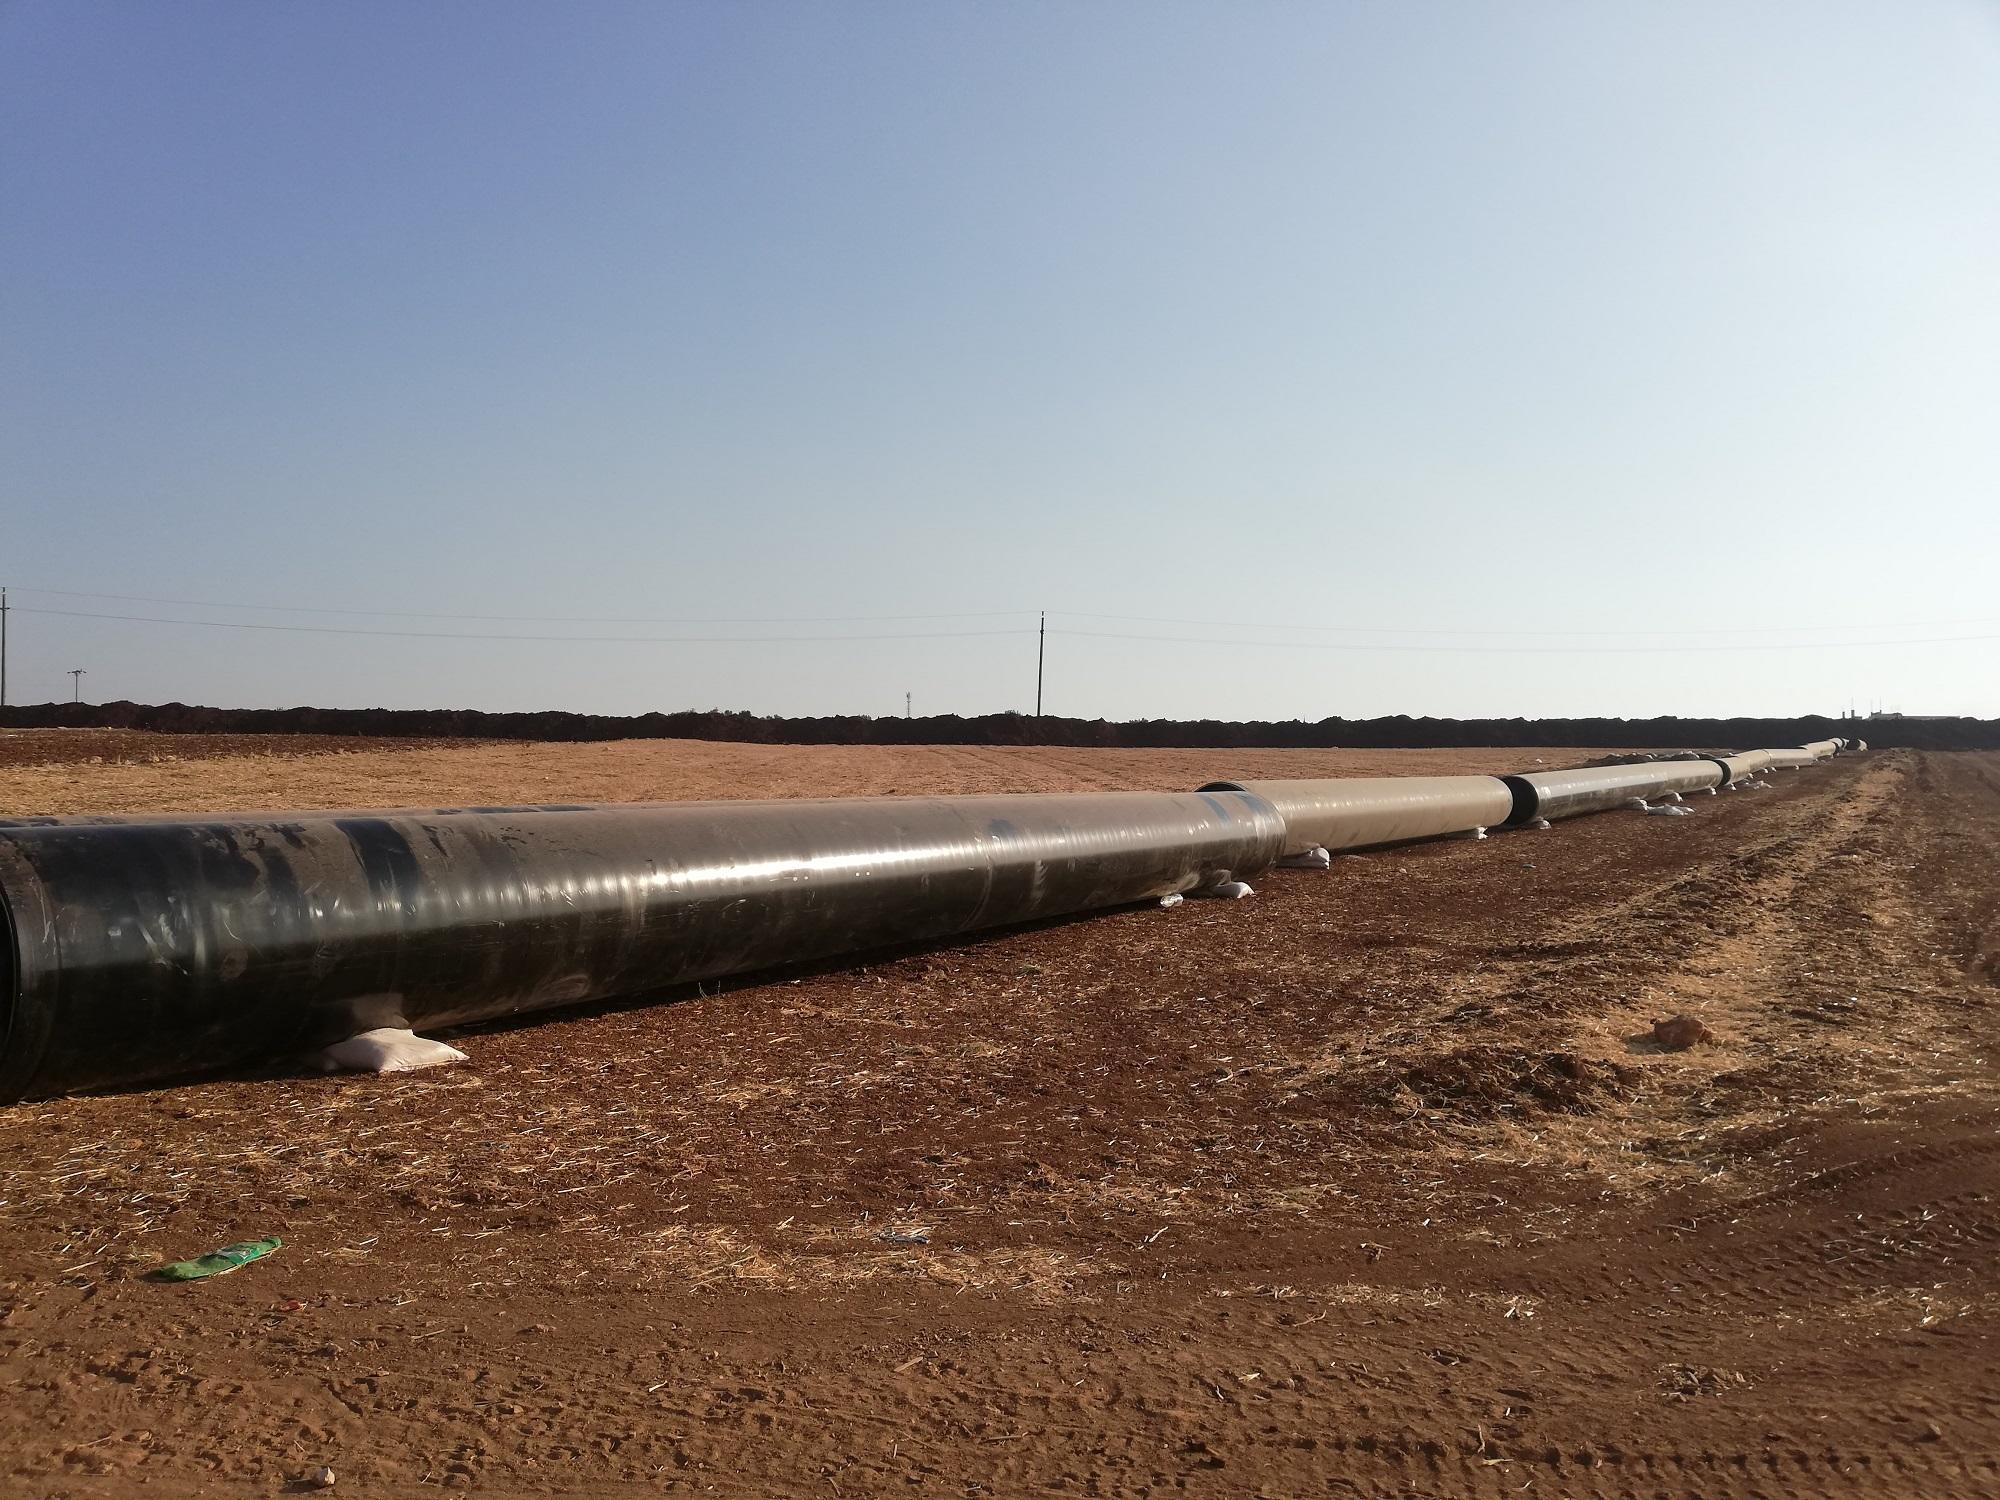 الصورة من قرية مخربا غربي محافظة إربد، وتظهر الأنابيب التي ستستخدم لنقل الغاز المستورد من شركة نوبل إنيرجي إلى الأردن، 8 أغسطس 2018. (المملكة)